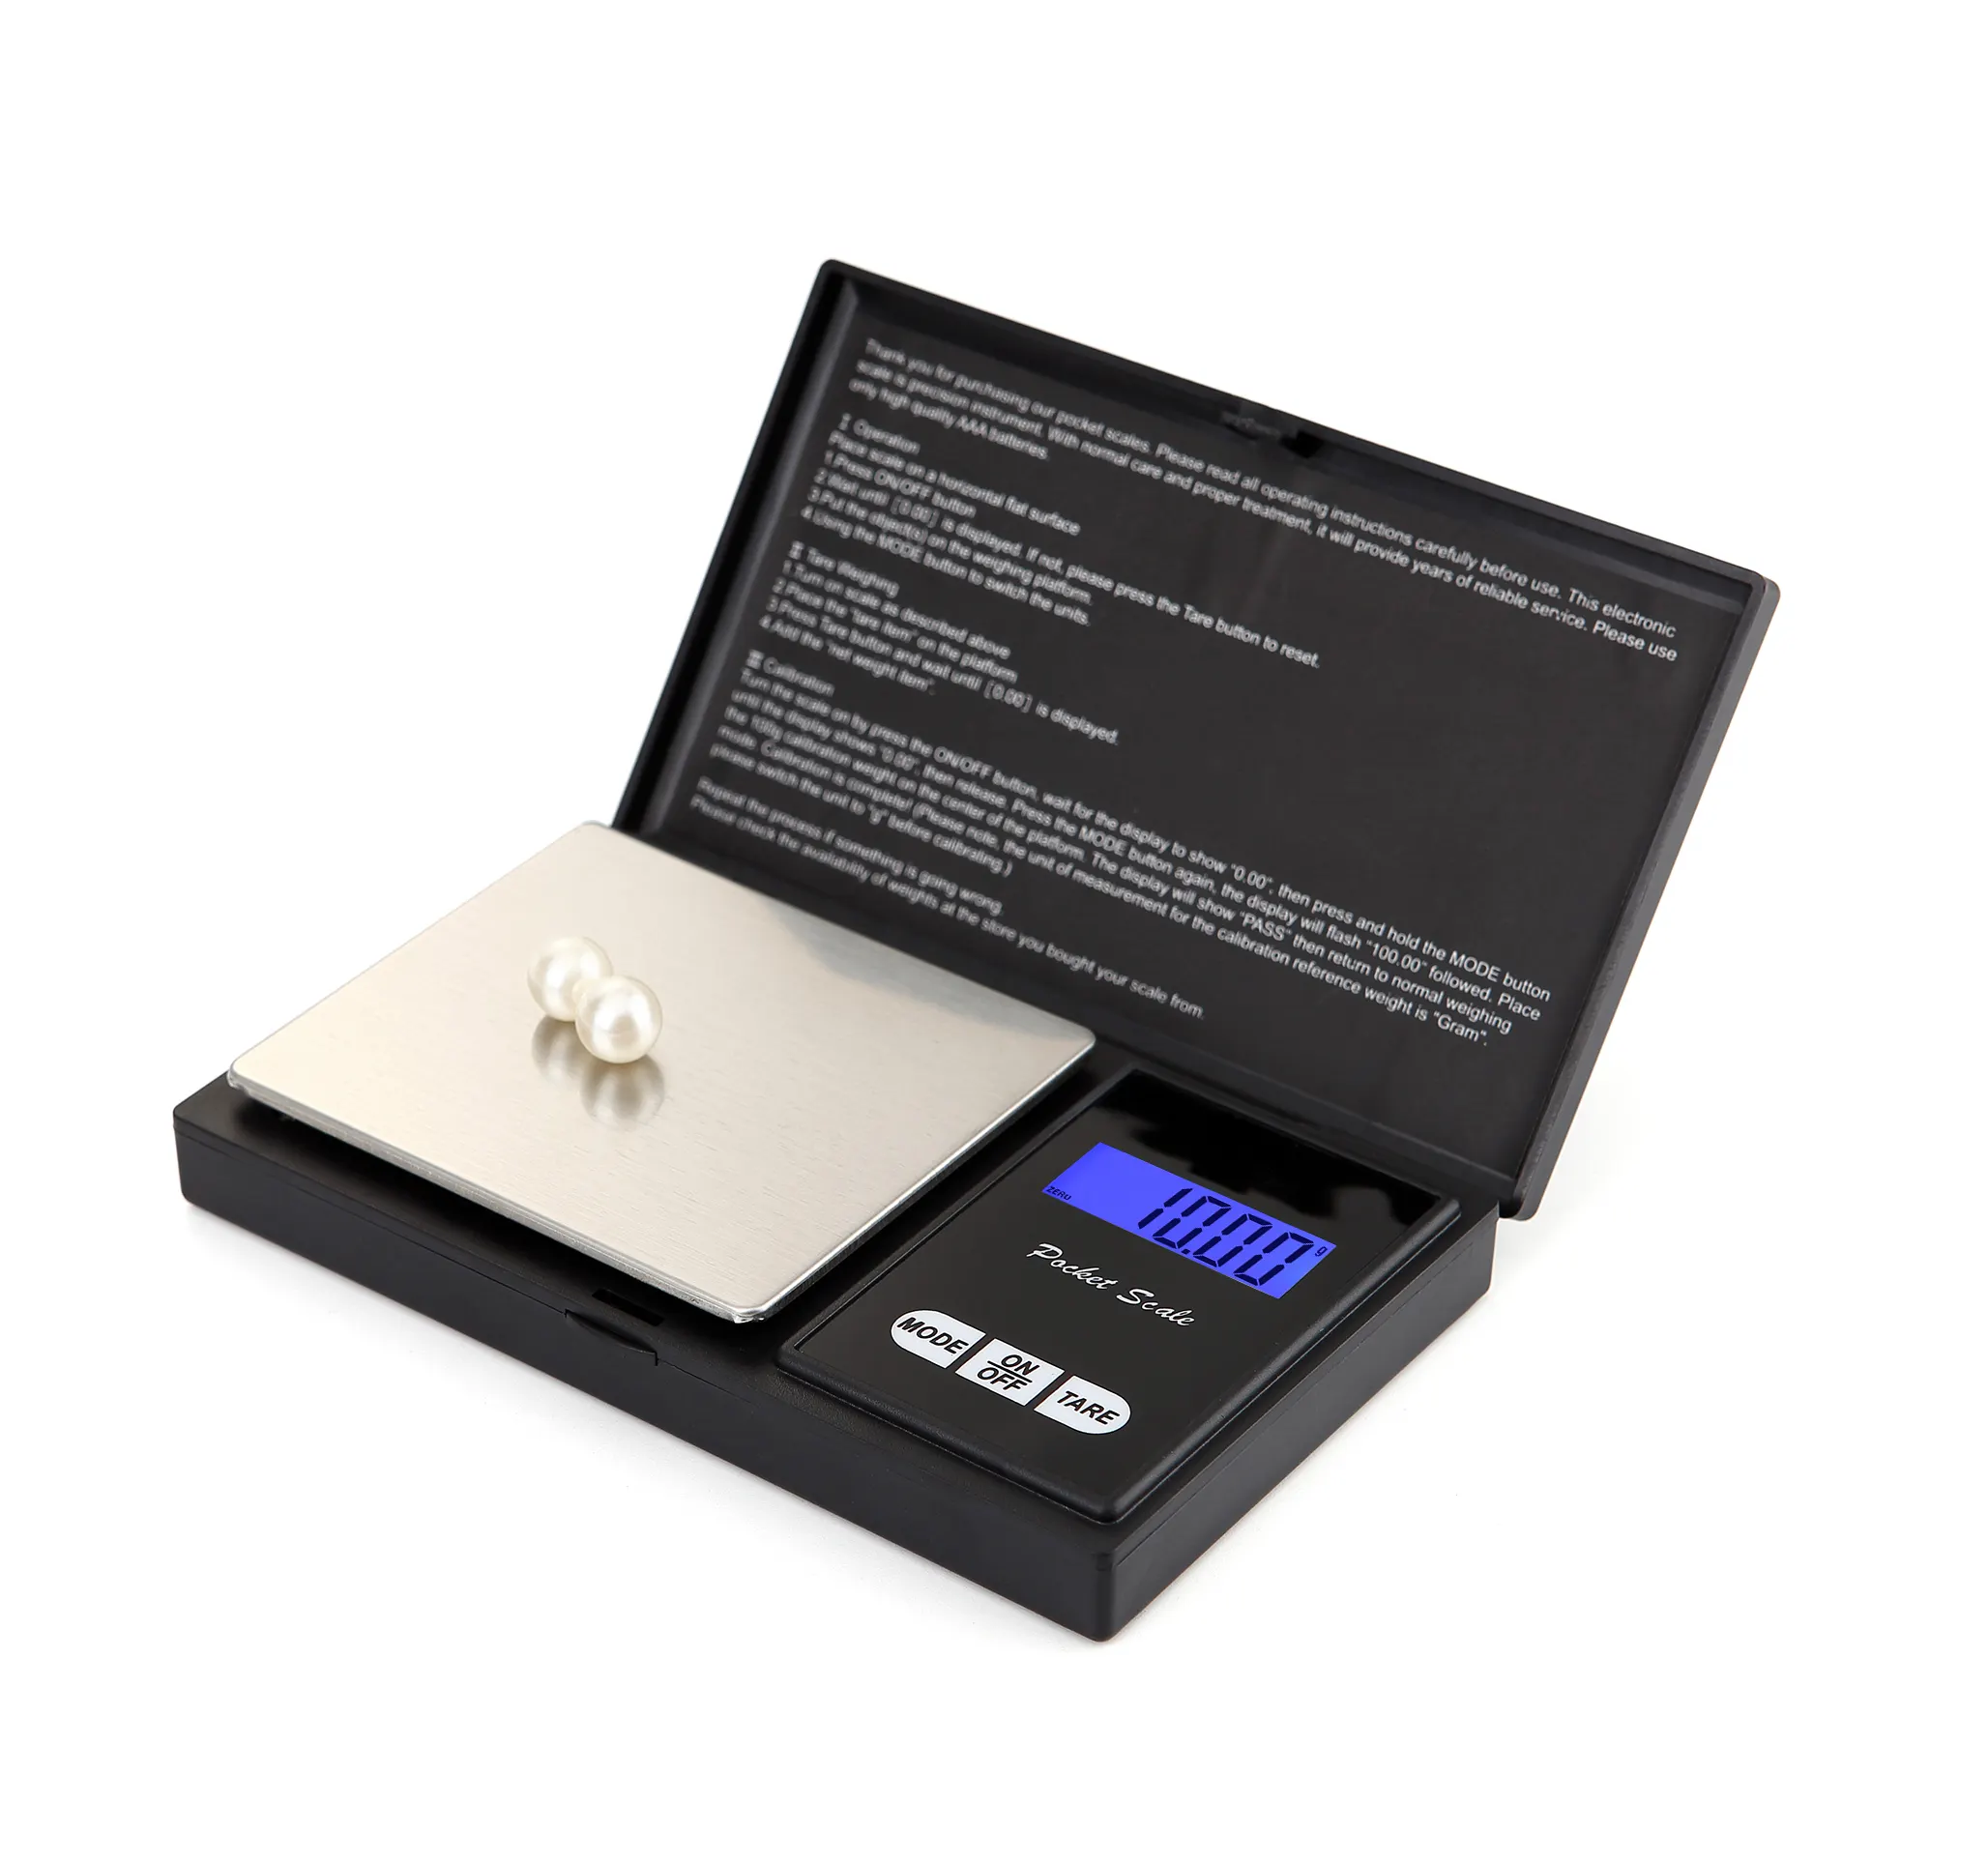 Báscula digital de precisión para joyería, balanza de bolsillo personalizable de 100g, 200g, 300g, 500g, 1kg, 0,1g, 0.001g